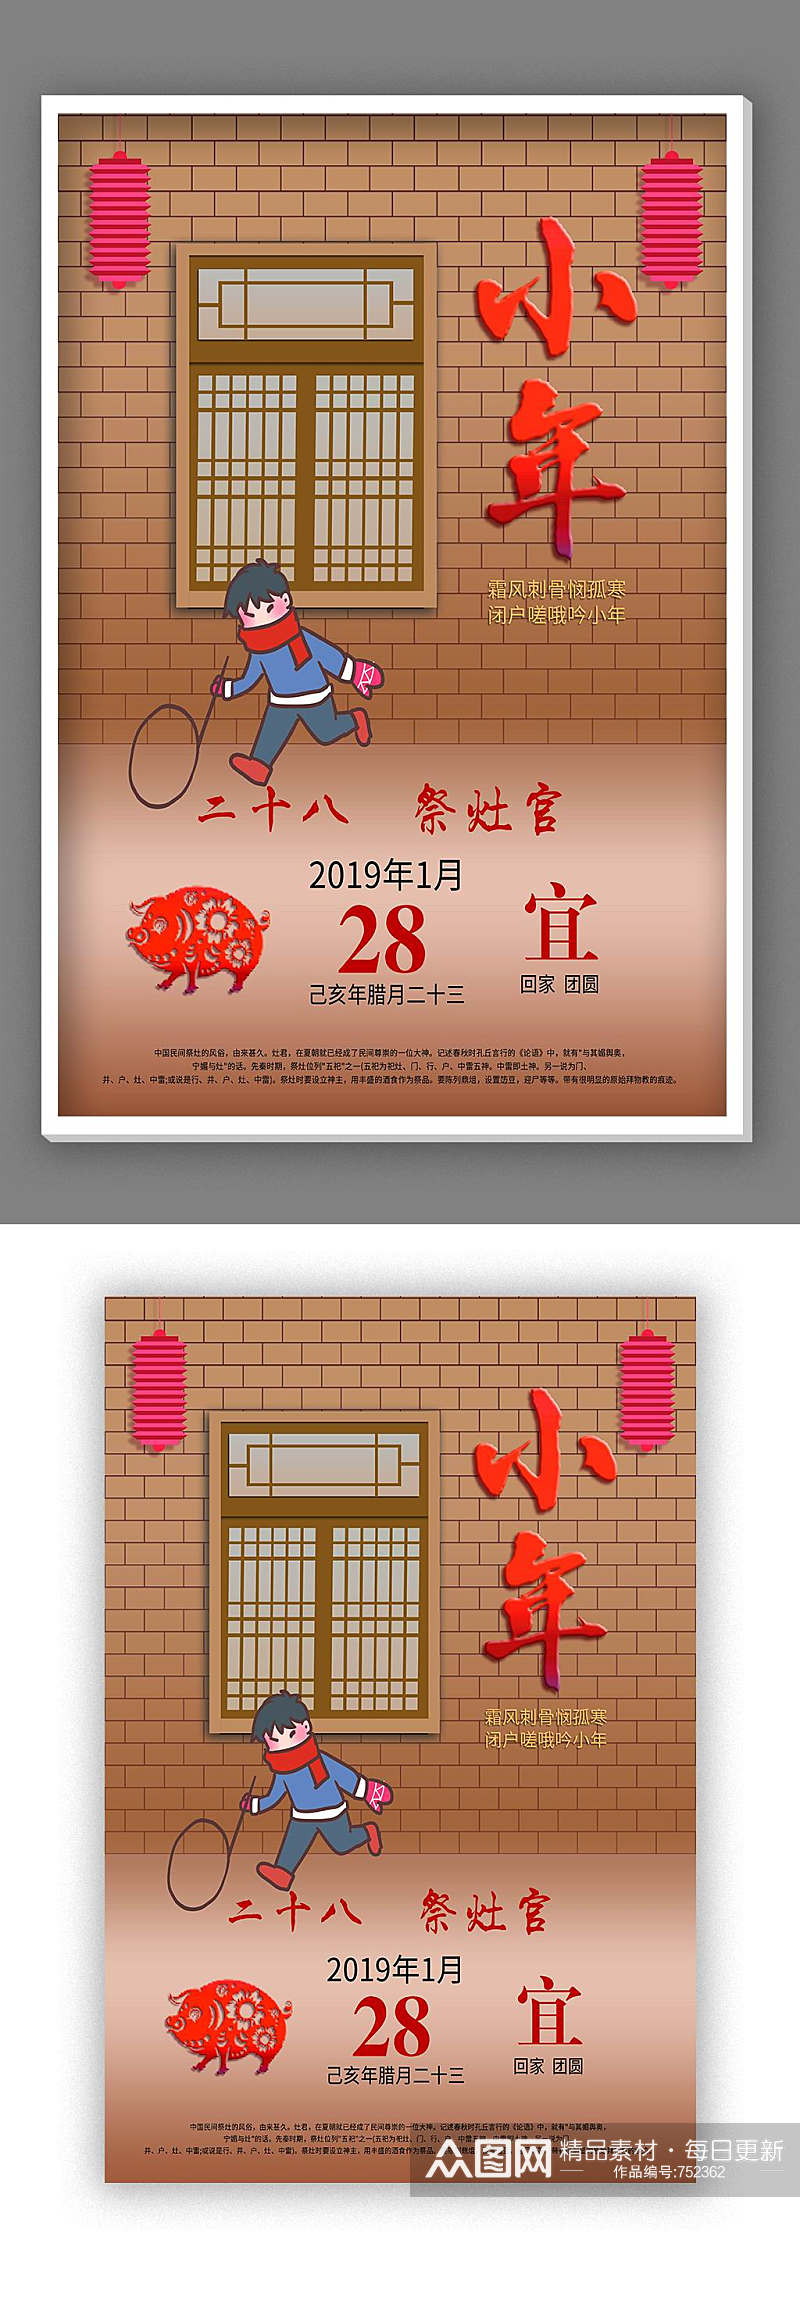 春节年货节海报设计素材